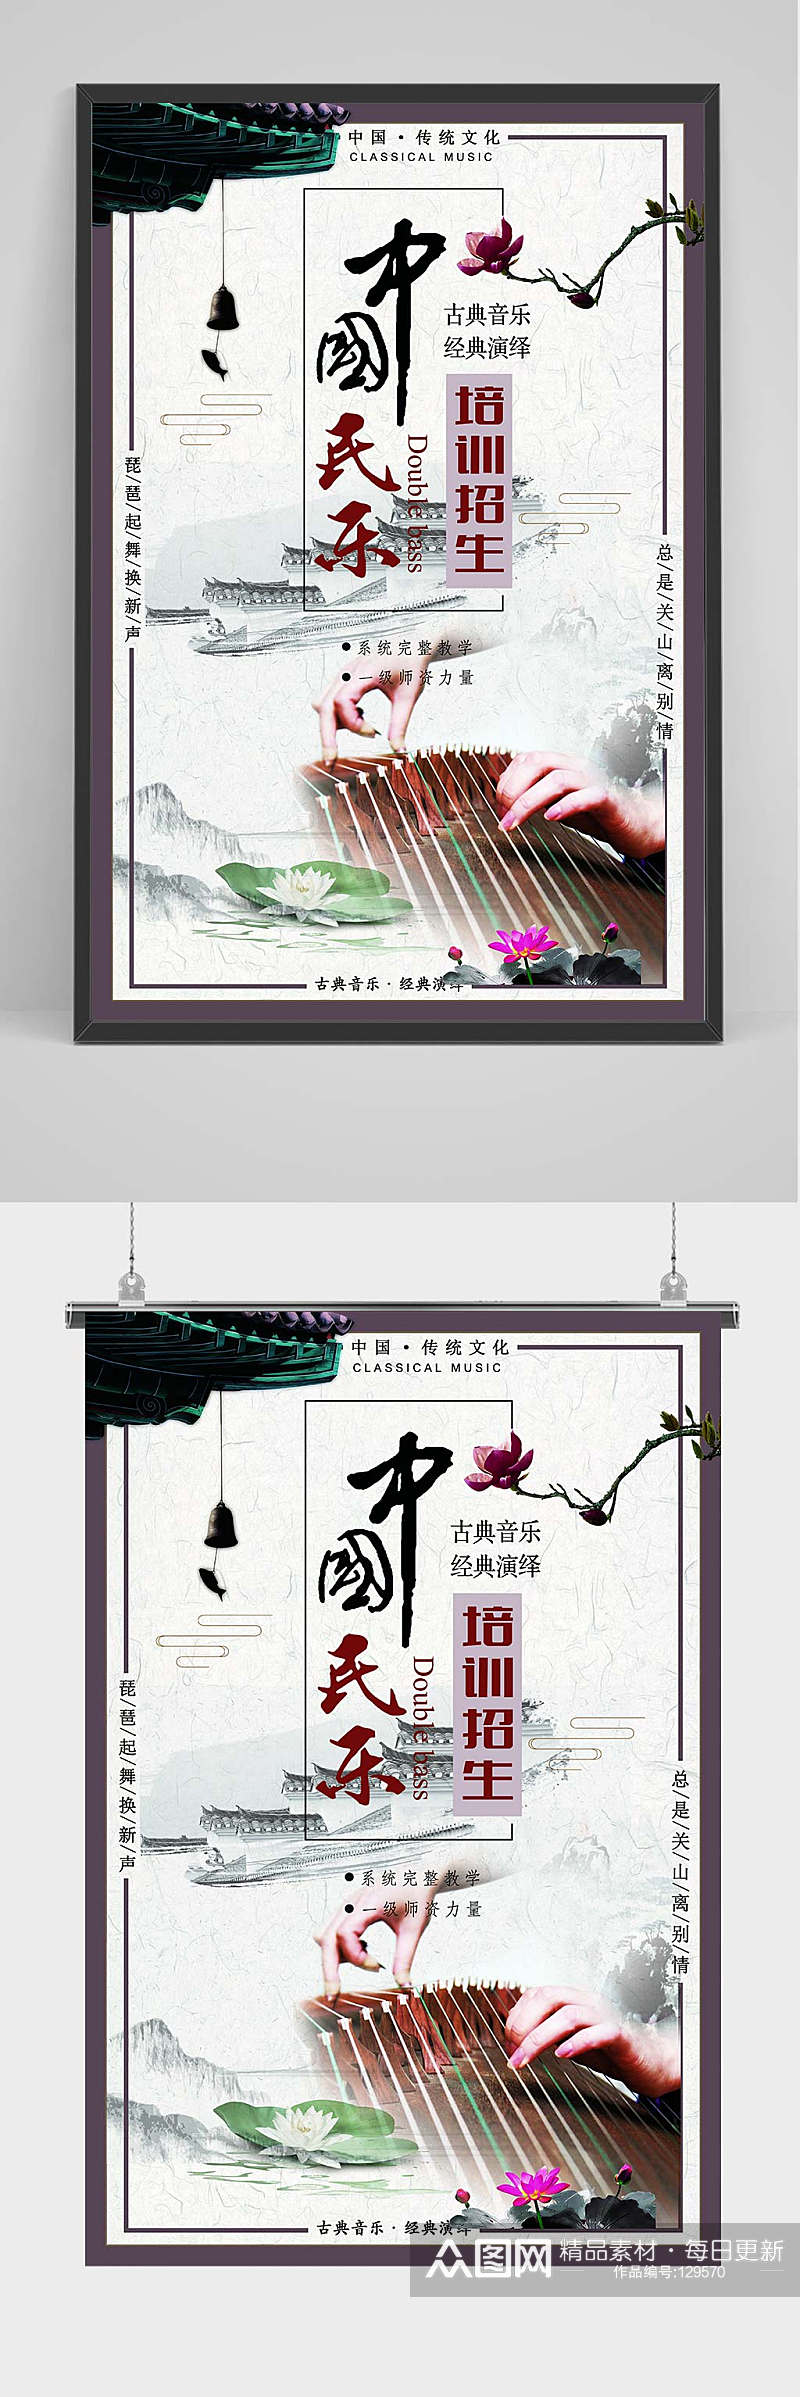 中国民乐古典乐器培训招生 古筝 海报素材